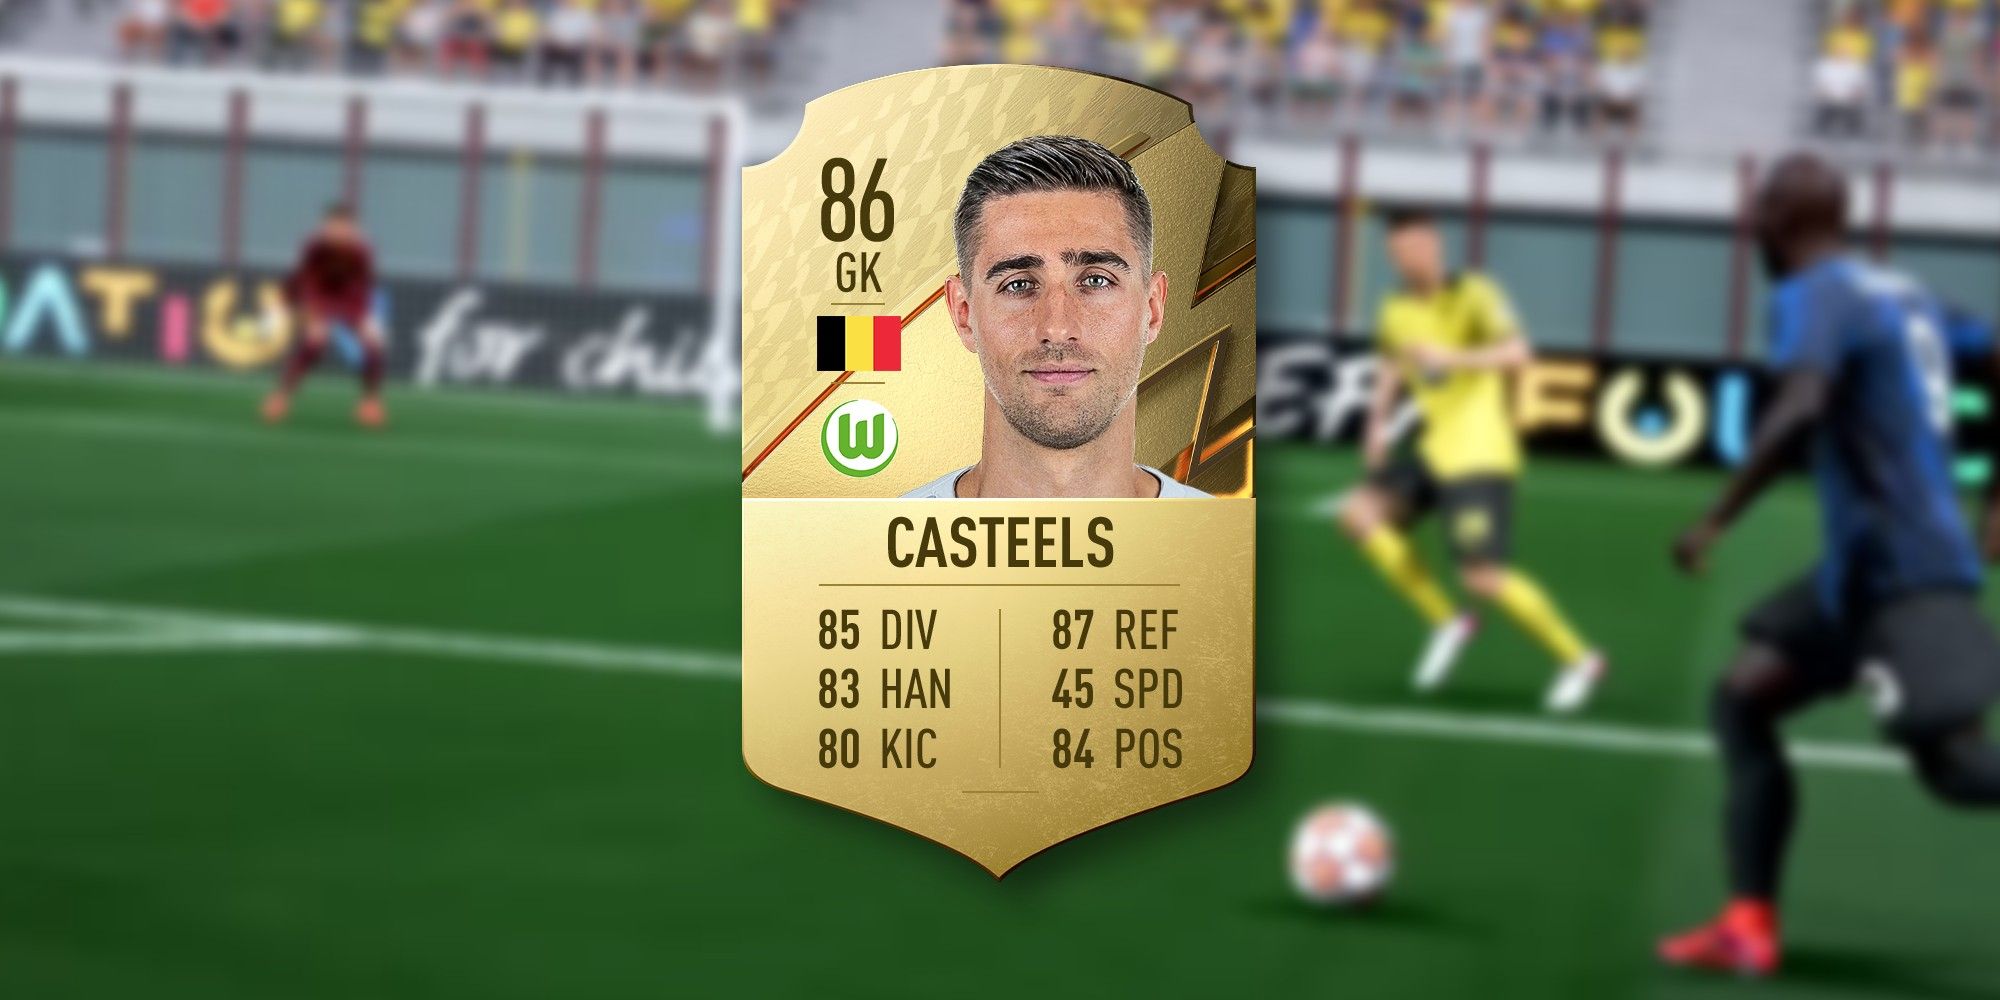 FIFA 22 casteels card